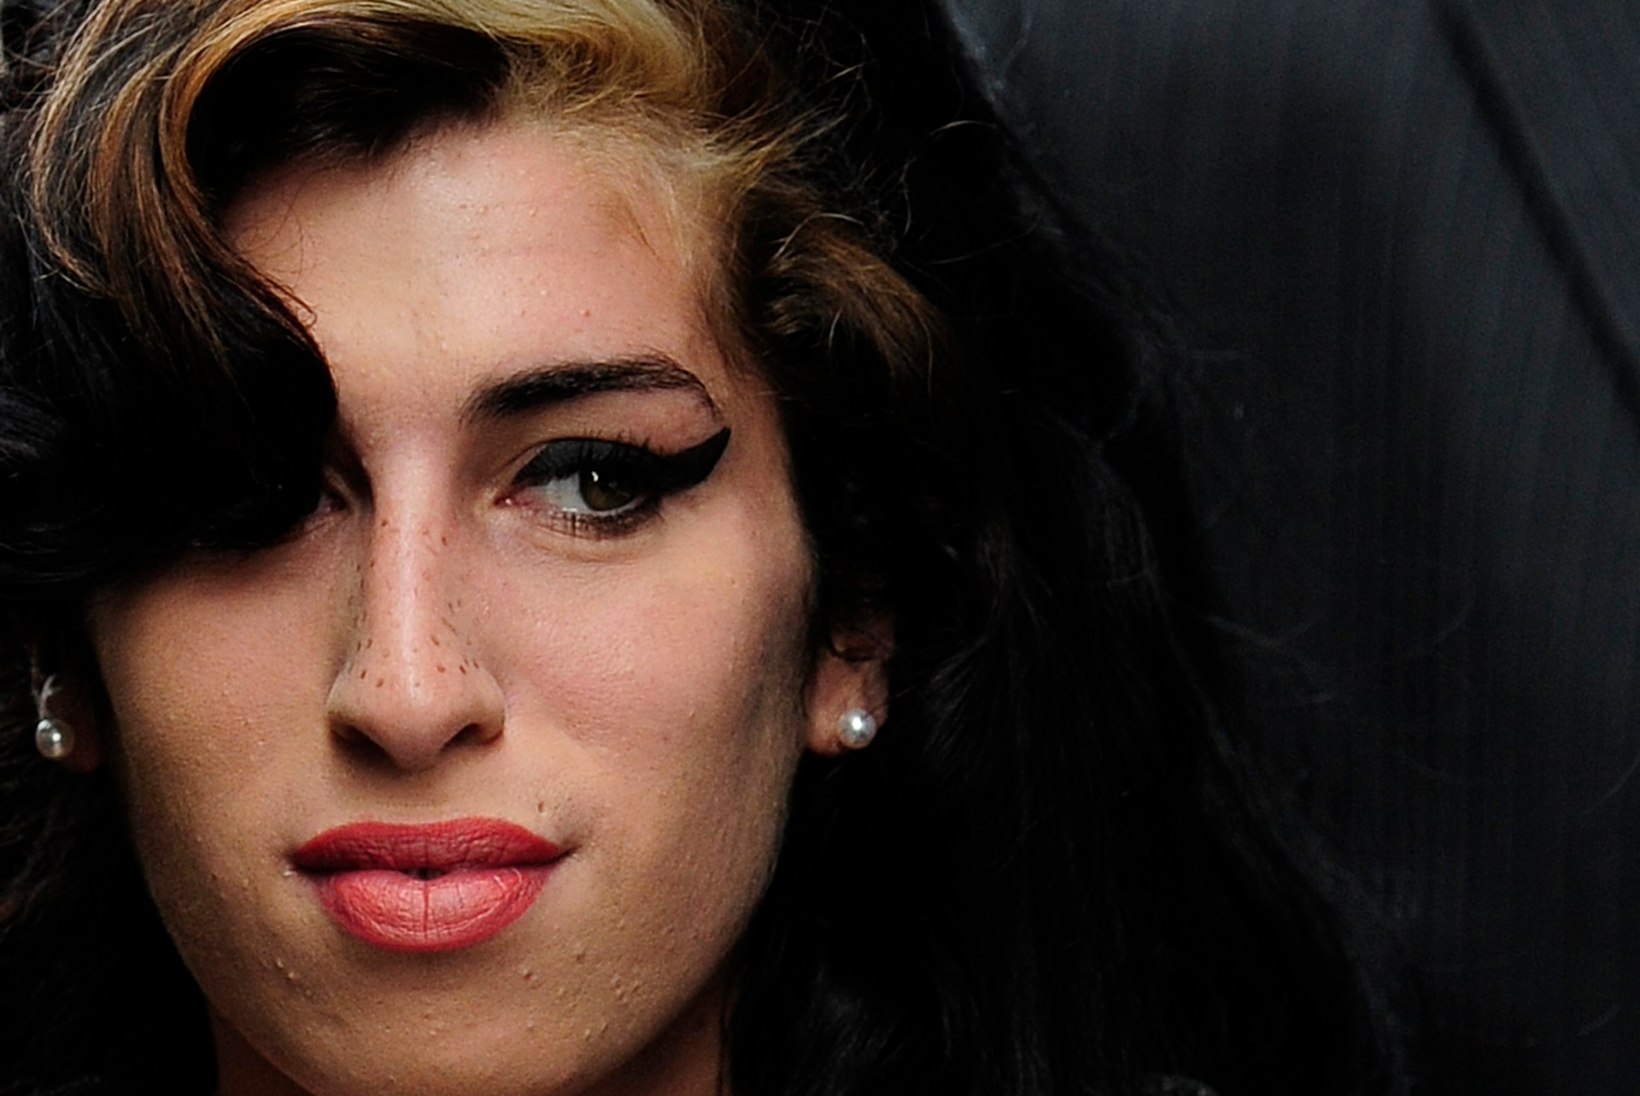 Amy Winehouse'i viimased elupäevad: lauljatar lõikus oma nägu ning põletas seda sigarettidega